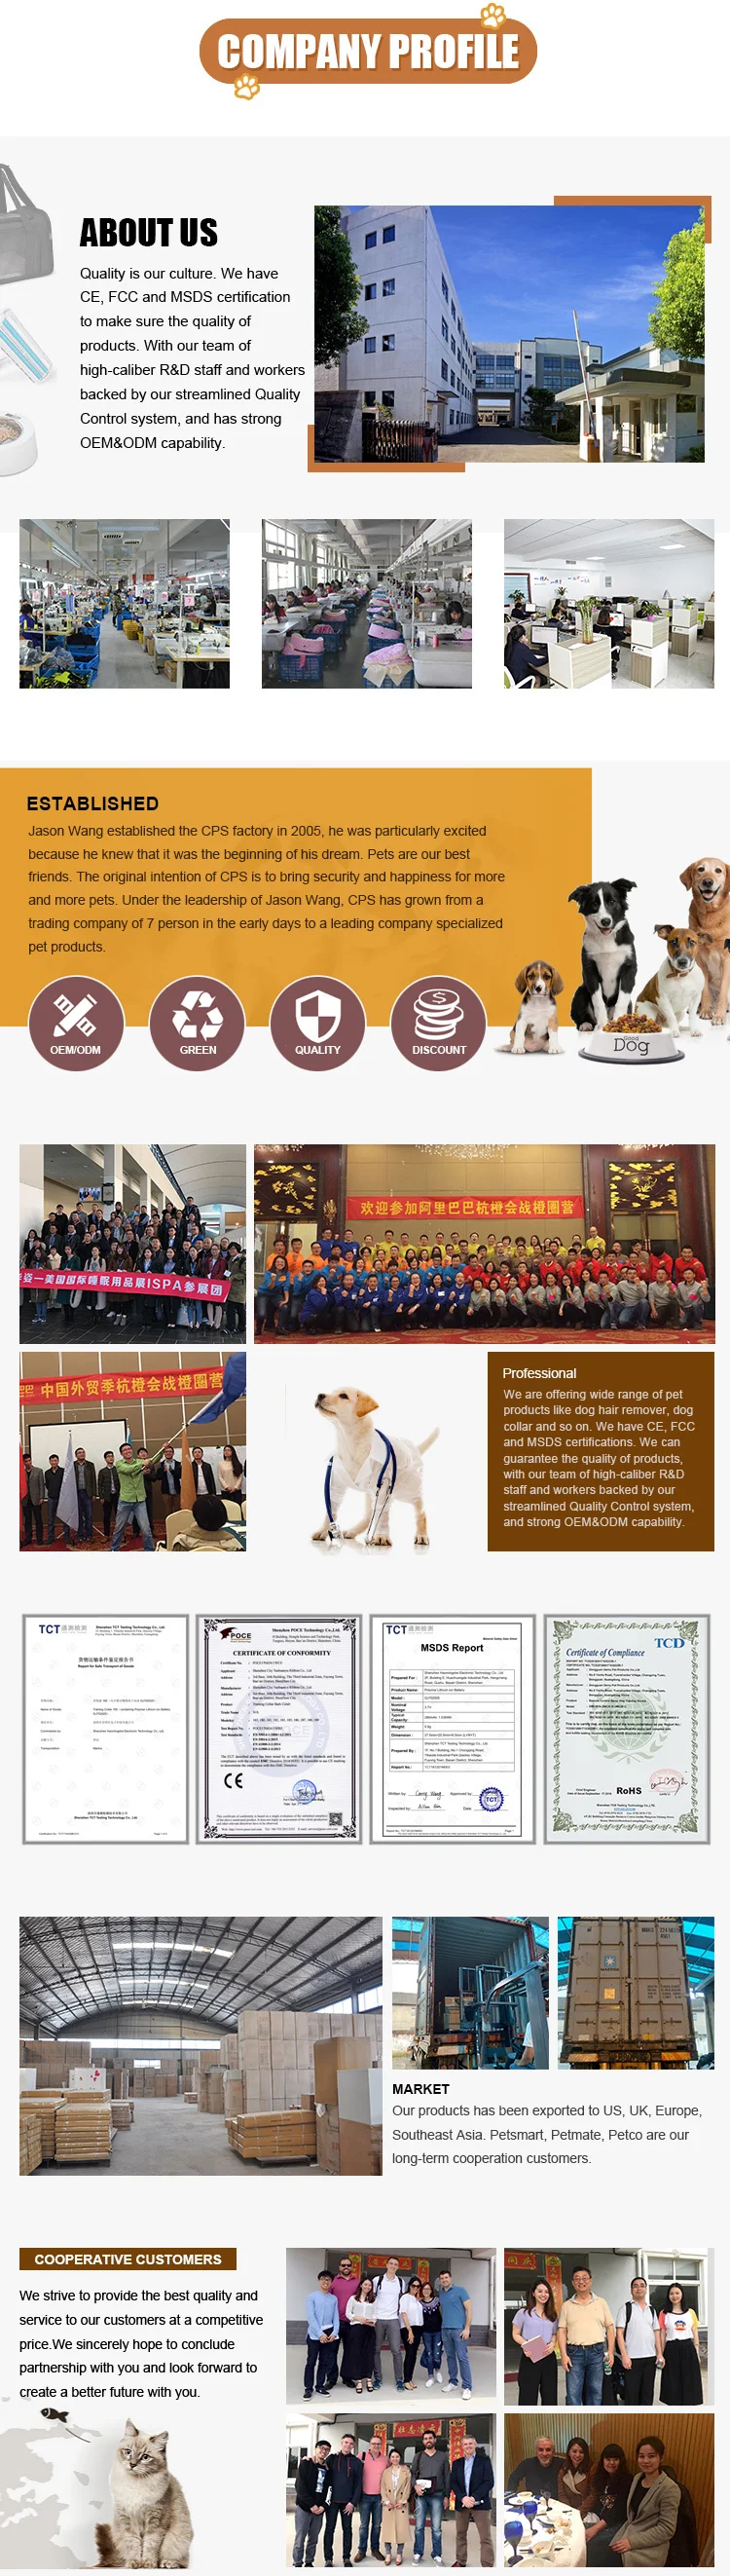 Company Overview - Hangzhou Angel Home Co., Ltd.